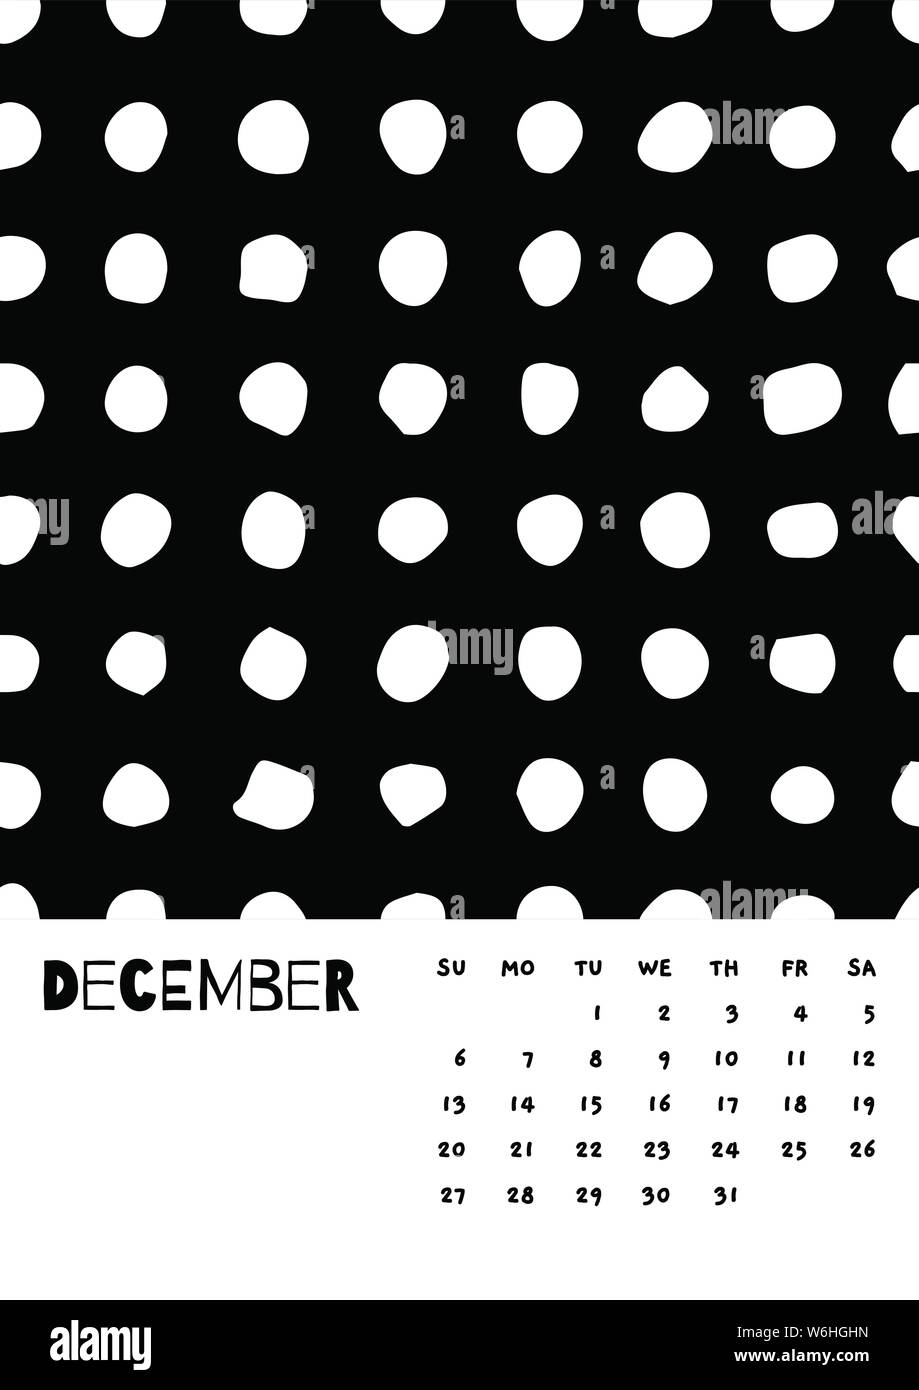 2020 Dezember Englisch Kalender Abstract Vector Hand zeichnen Polka Dot Schwarz und Weiß. Woche beginnt Sonntag. Monochrome Minimalismus Stil. Poster Kalender flyer Layout, Druck Medien, Broschüre A3, A4, A5 Stock Vektor